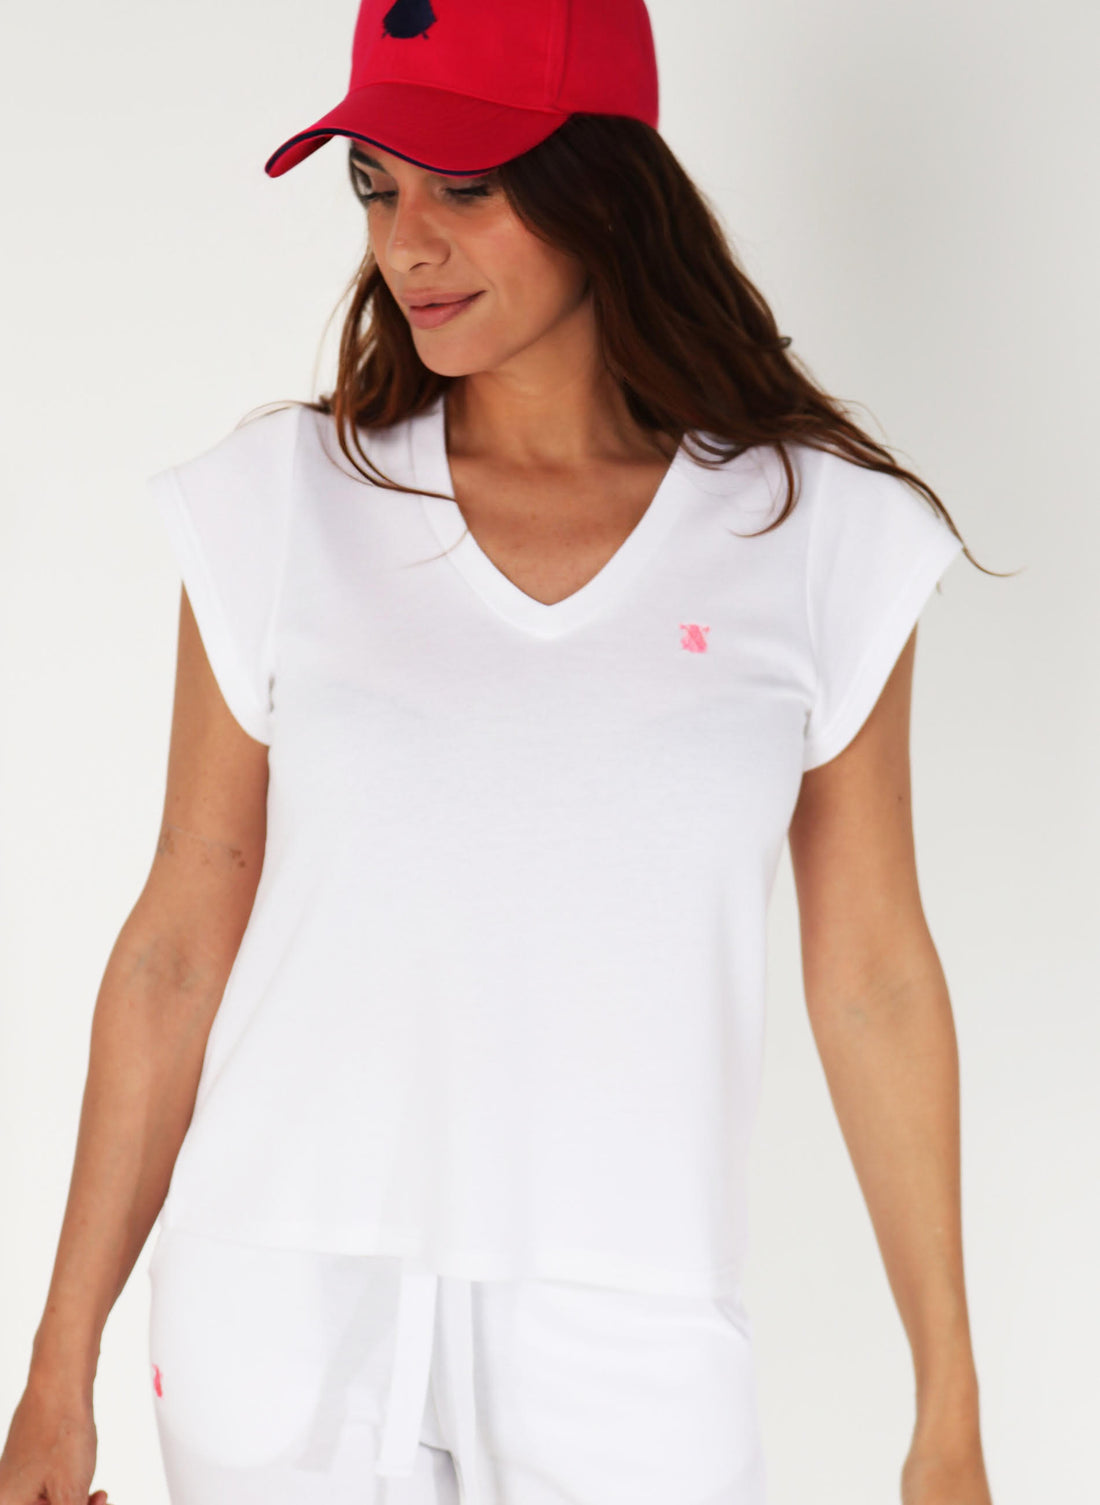 White T-shirt for Women V Neck